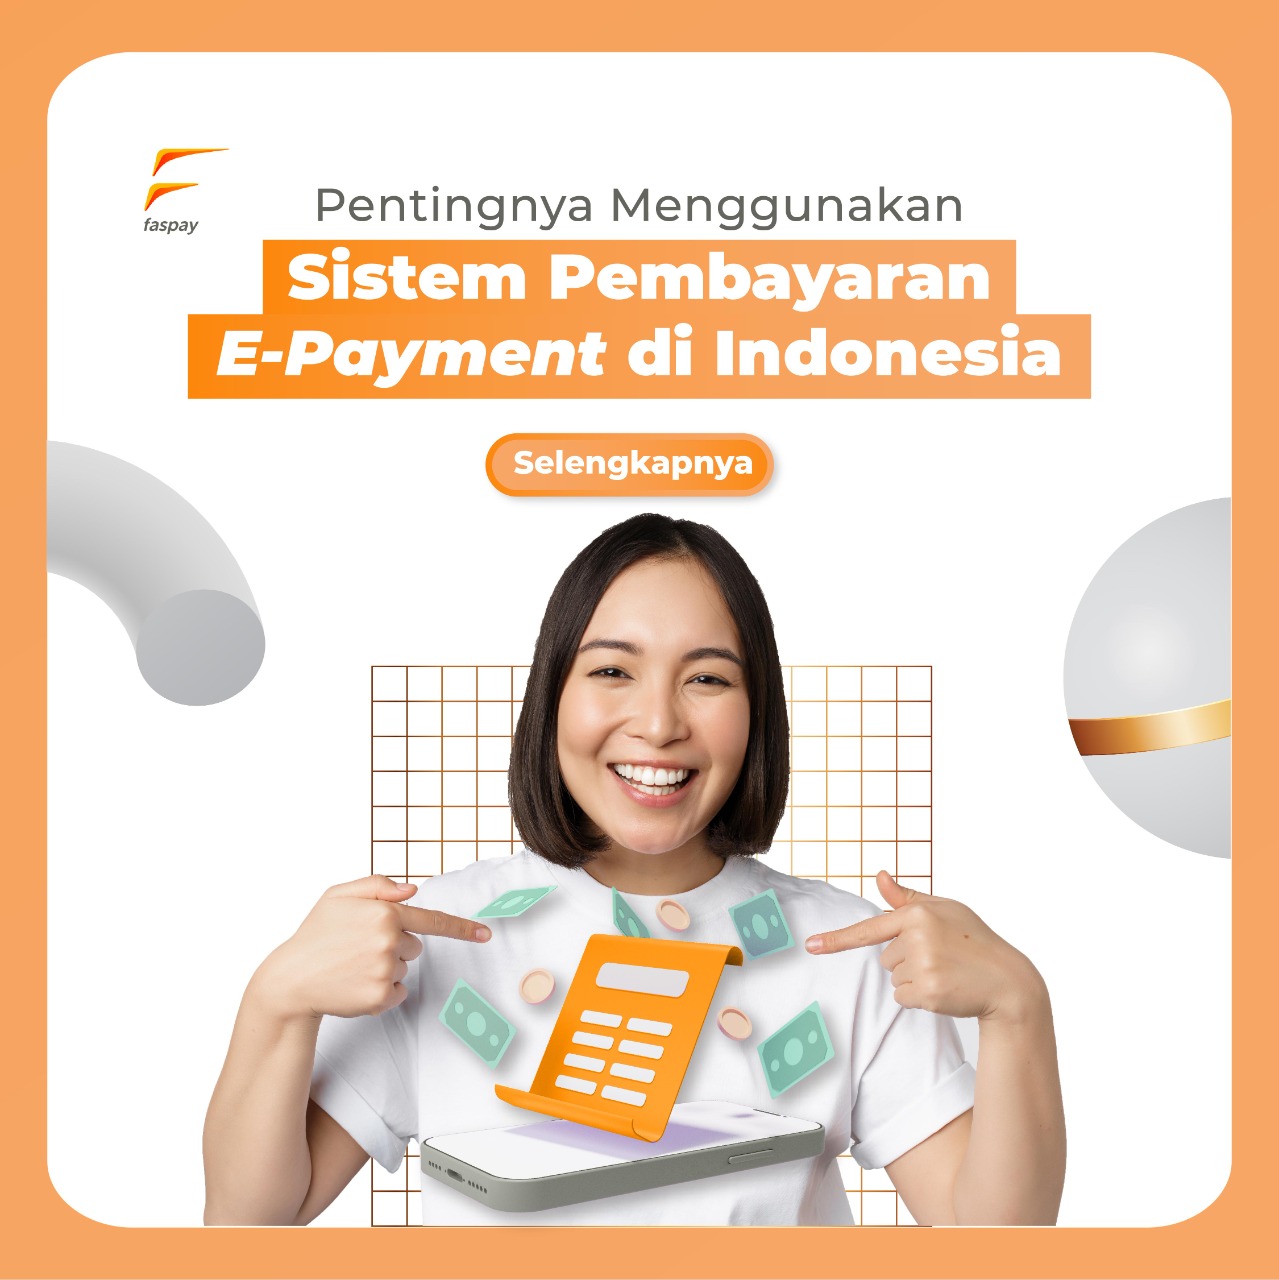 Pentingnya Menggunakan Sistem Pembayaran E-Payment di Indonesia